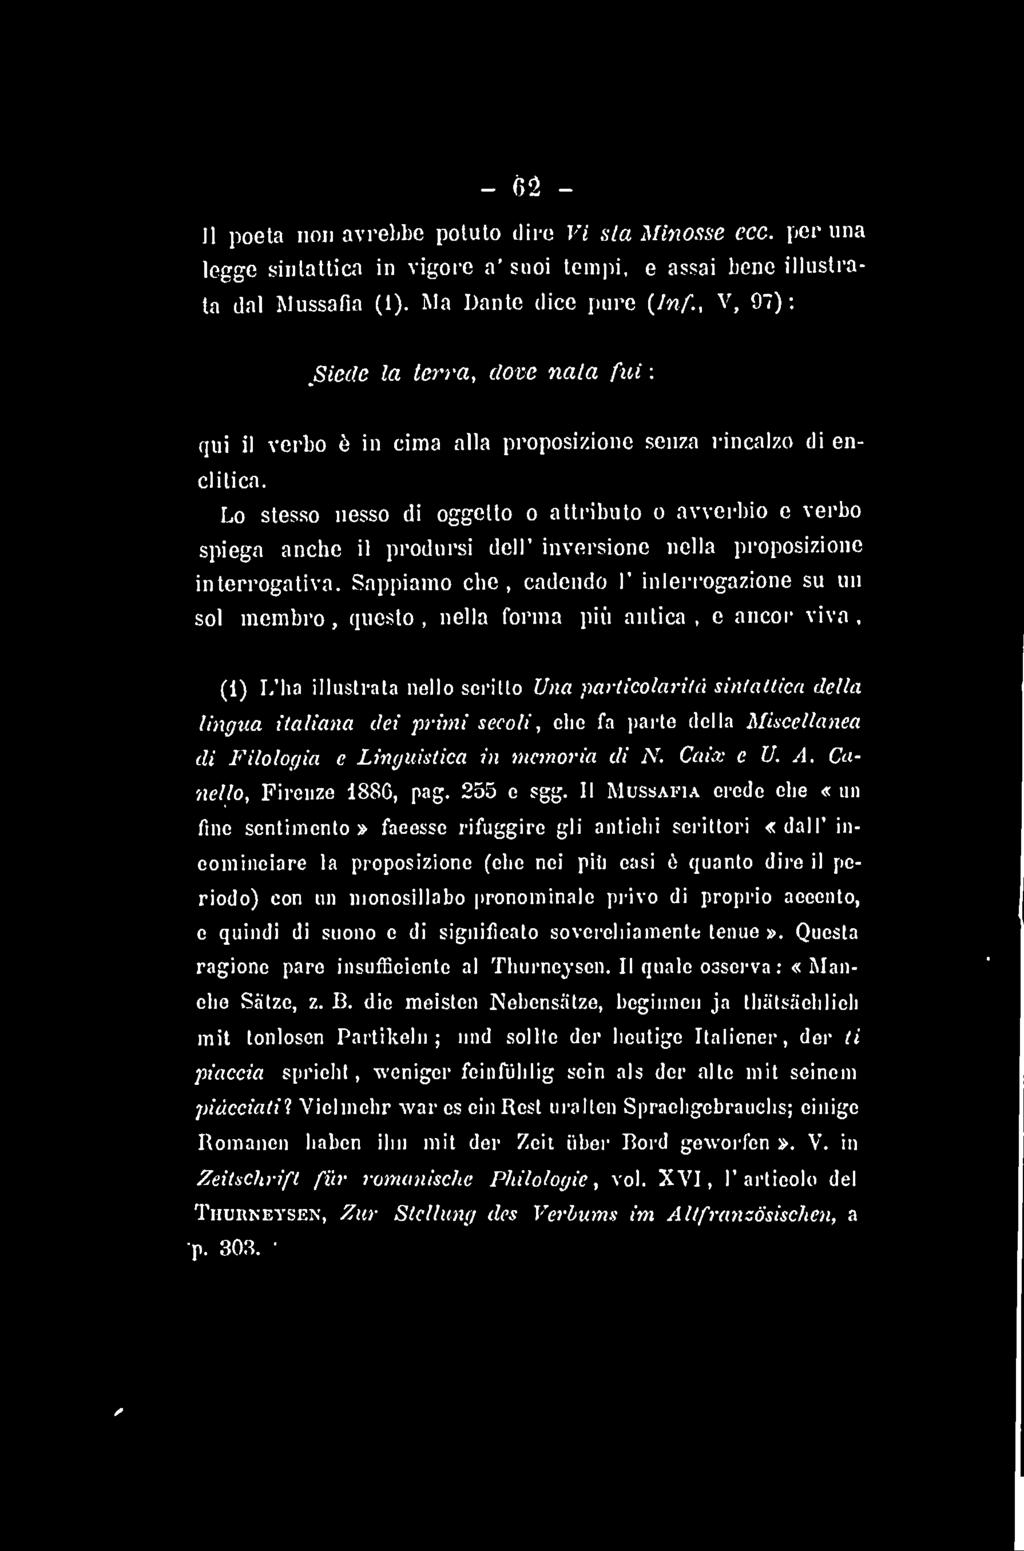 secoli, che fa parte della Miscellanea di Filologia e Linguistica in memoria di N. Caix e U. A. Canello, Firenze 1886, pag. 255 e sgg.